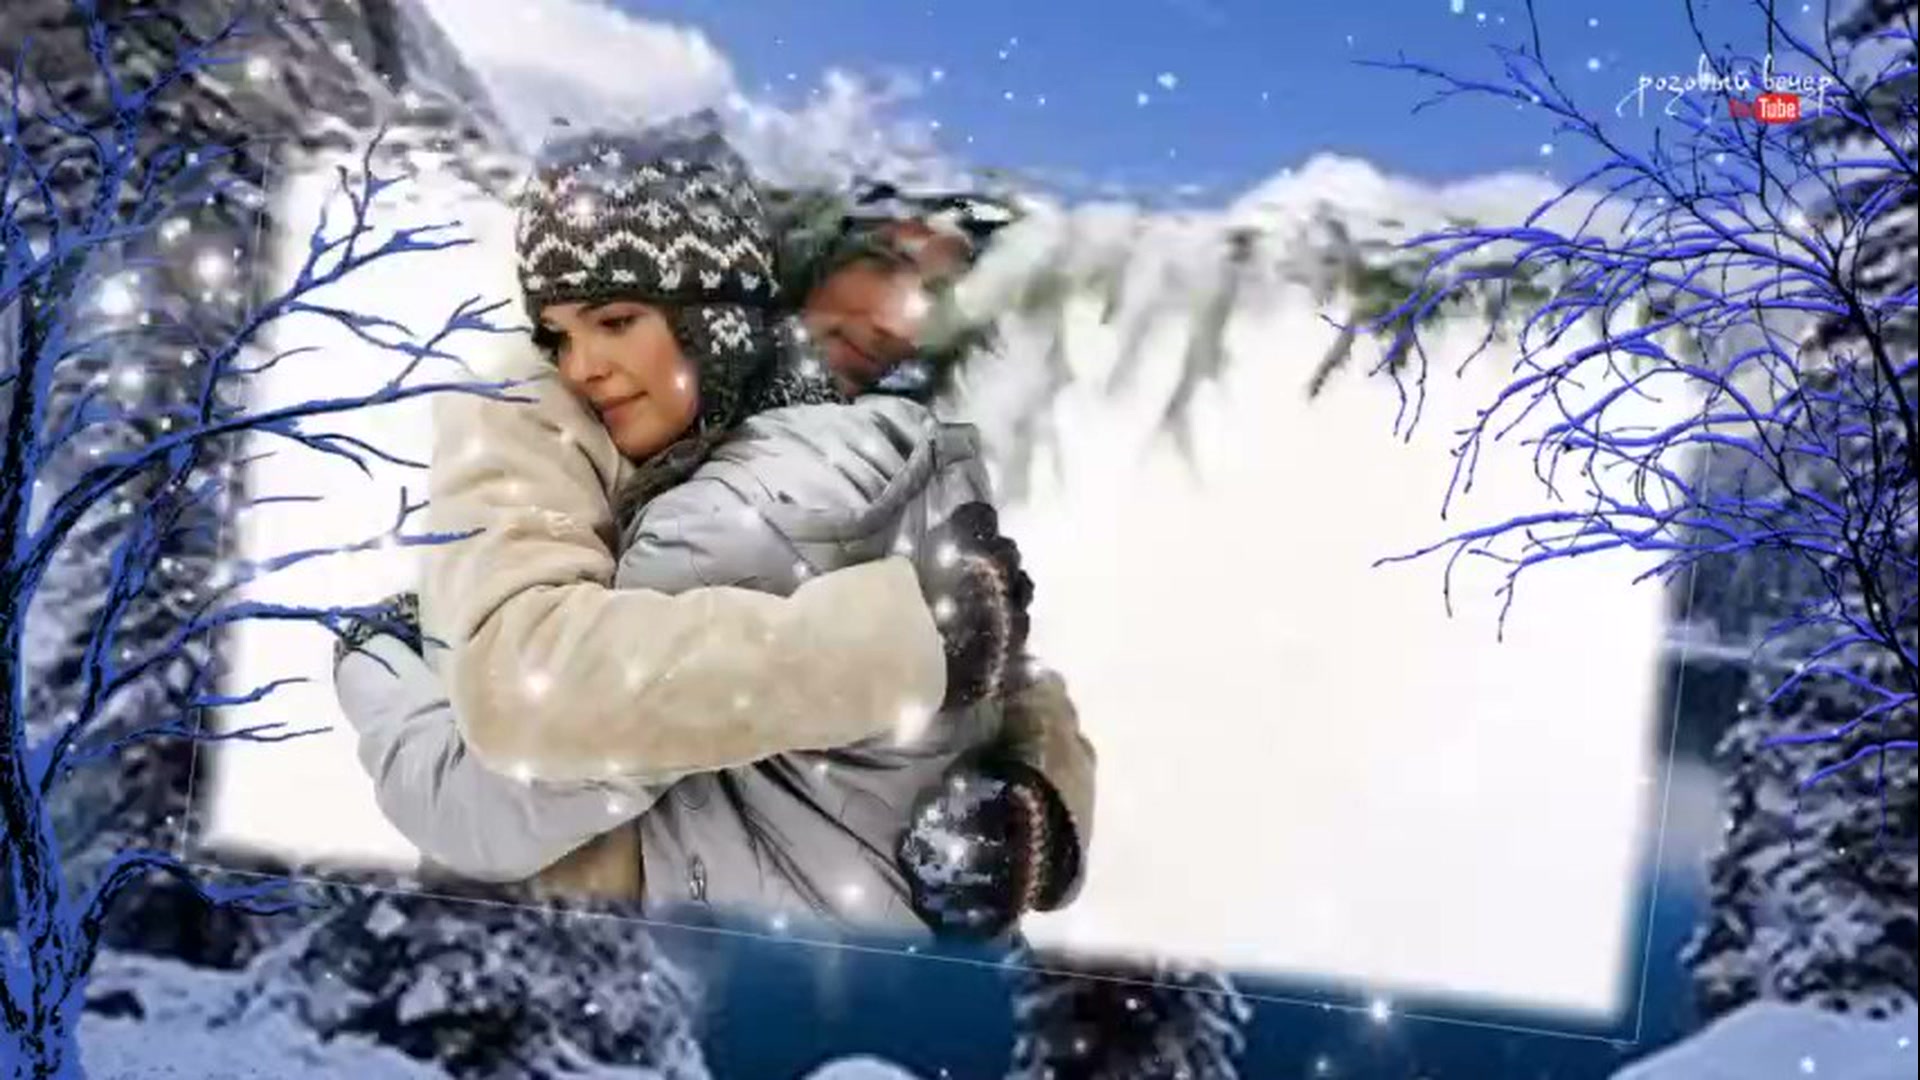 Слушать музыку холодно холодно. Снежок [ВИА] Гагарин. Снежок [ВИА] Гагарин исполнитель. Анимация Ах этот снег серебрятся снежинки.